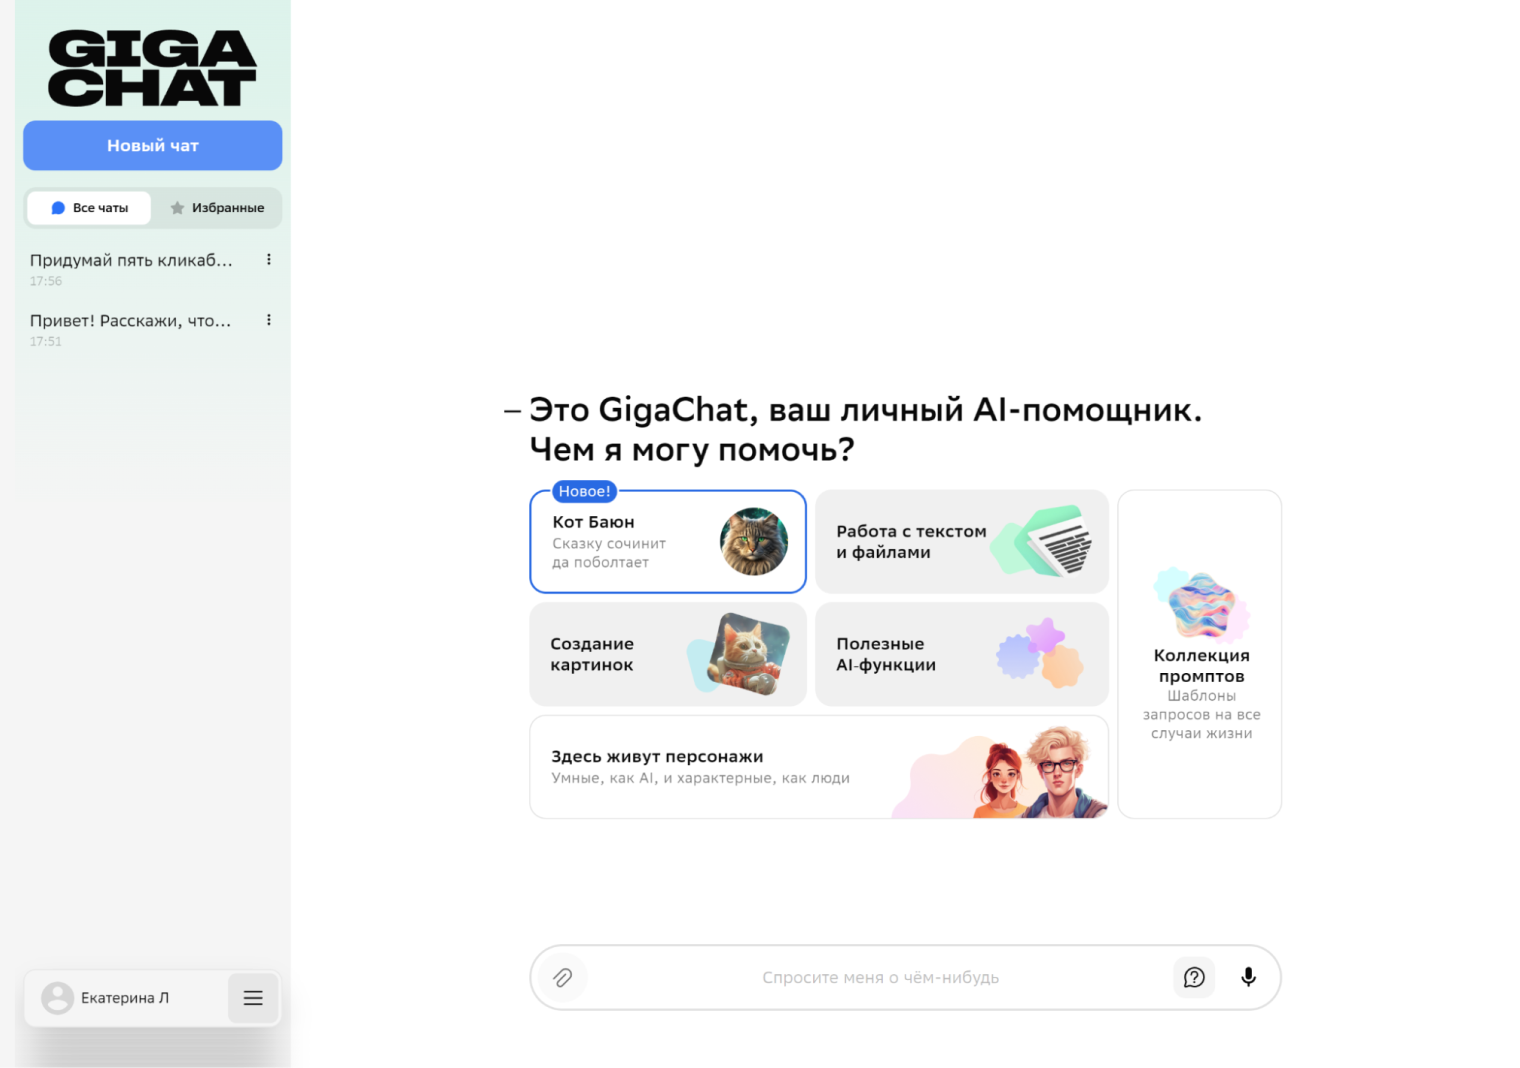 На главной странице GigaChat можно выбрать персонажа — ИИ⁠-⁠ассистента с настроенной ролью или просто начать общаться с сервисом. Коллекцию промптов мне посмотреть не удалось — сайт выдавал ошибку, но идея отличная, буду ждать ее реализации